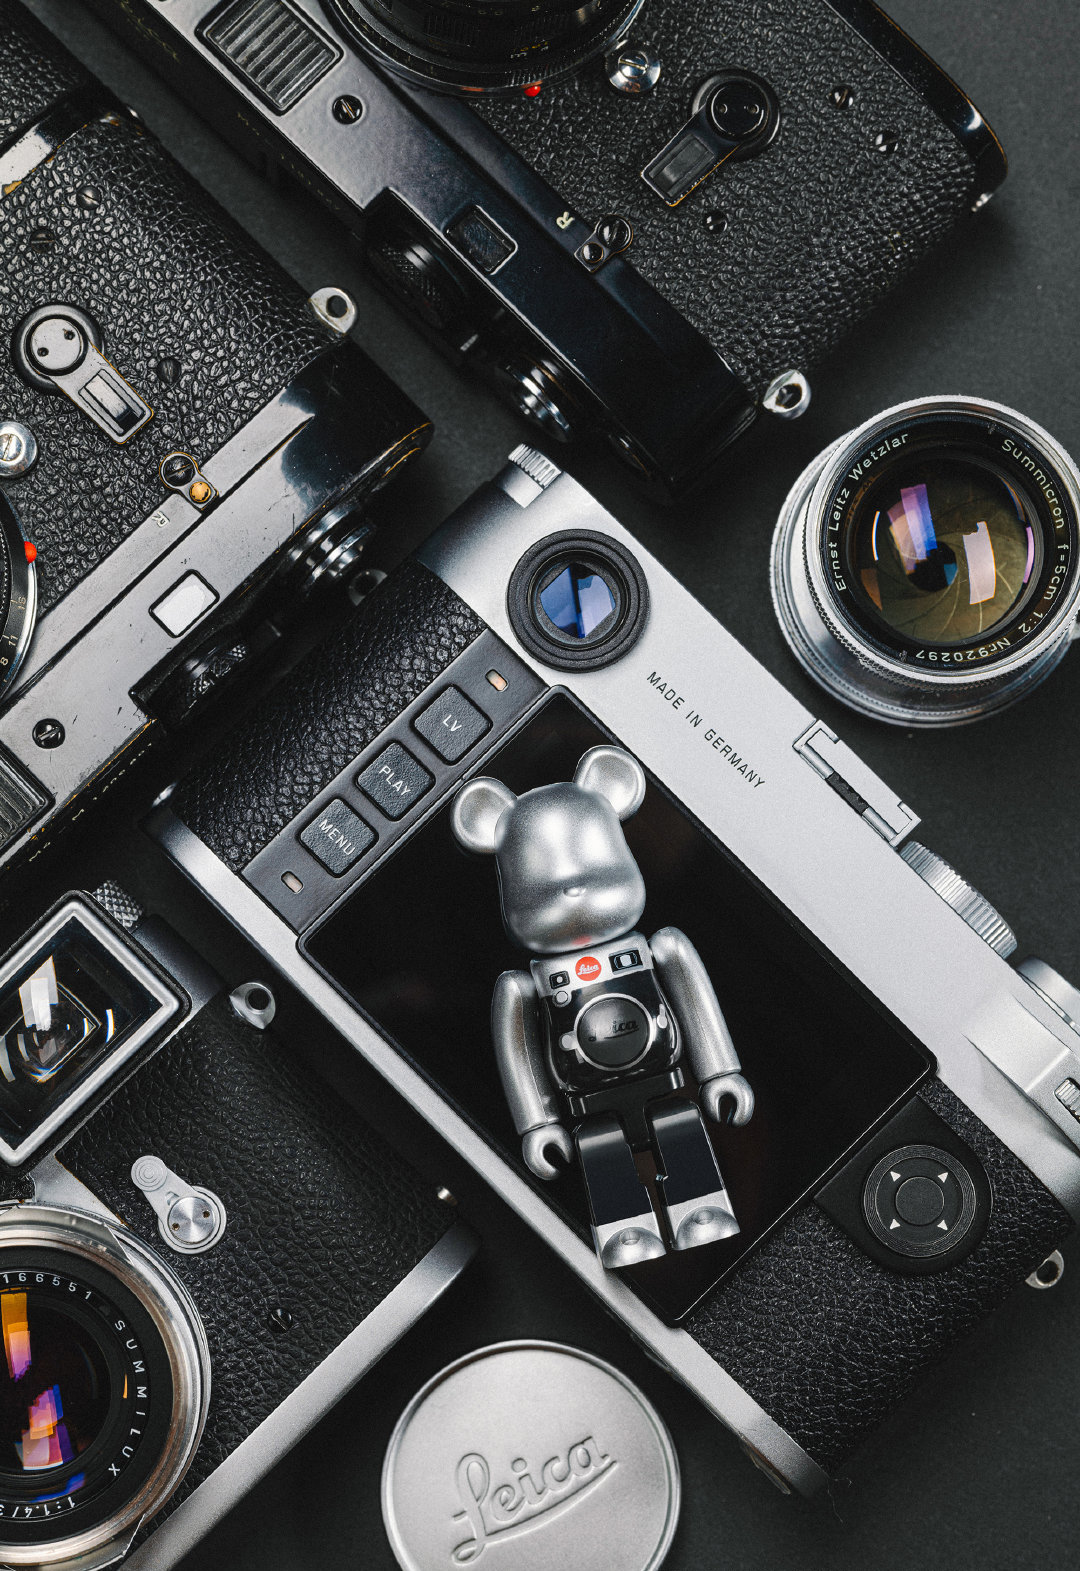 Leica, Be@rbrick, Richkid: Bạn là một người yêu thích đồ chơi và đam mê nhiếp ảnh? Bức ảnh về Leica, Be@rbrick và Richkid sẽ khiến bạn mãn nguyện. Với những sản phẩm cao cấp và thiết kế đẳng cấp, hãy cùng chiêm ngưỡng tác phẩm nghệ thuật của những người giàu có.